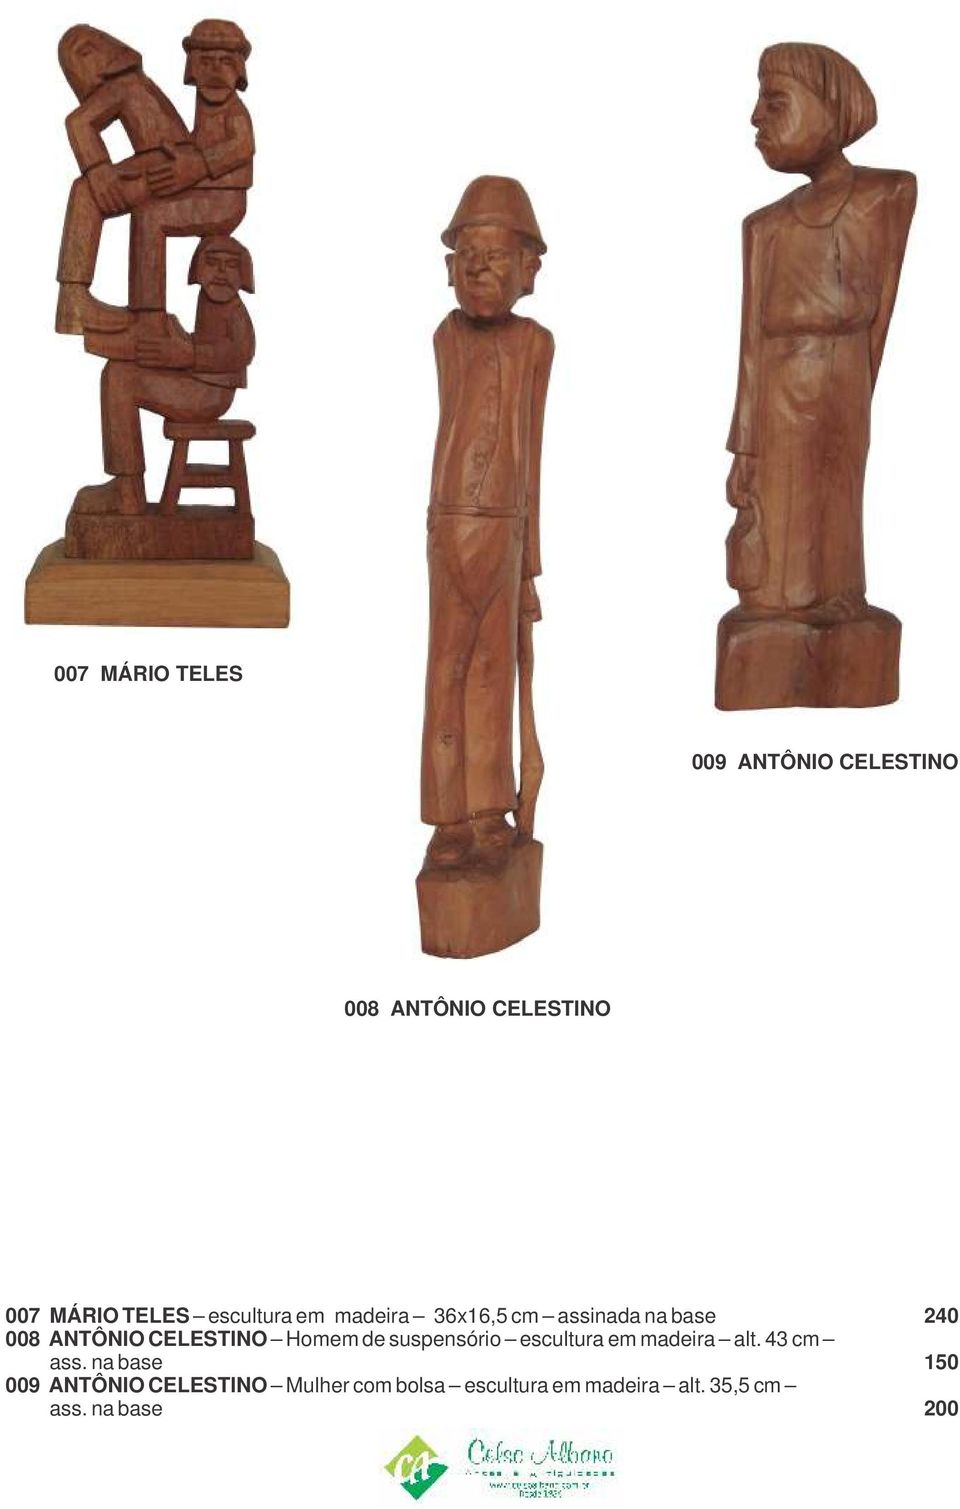 Homem de suspensório escultura em madeira alt. 43 cm ass.